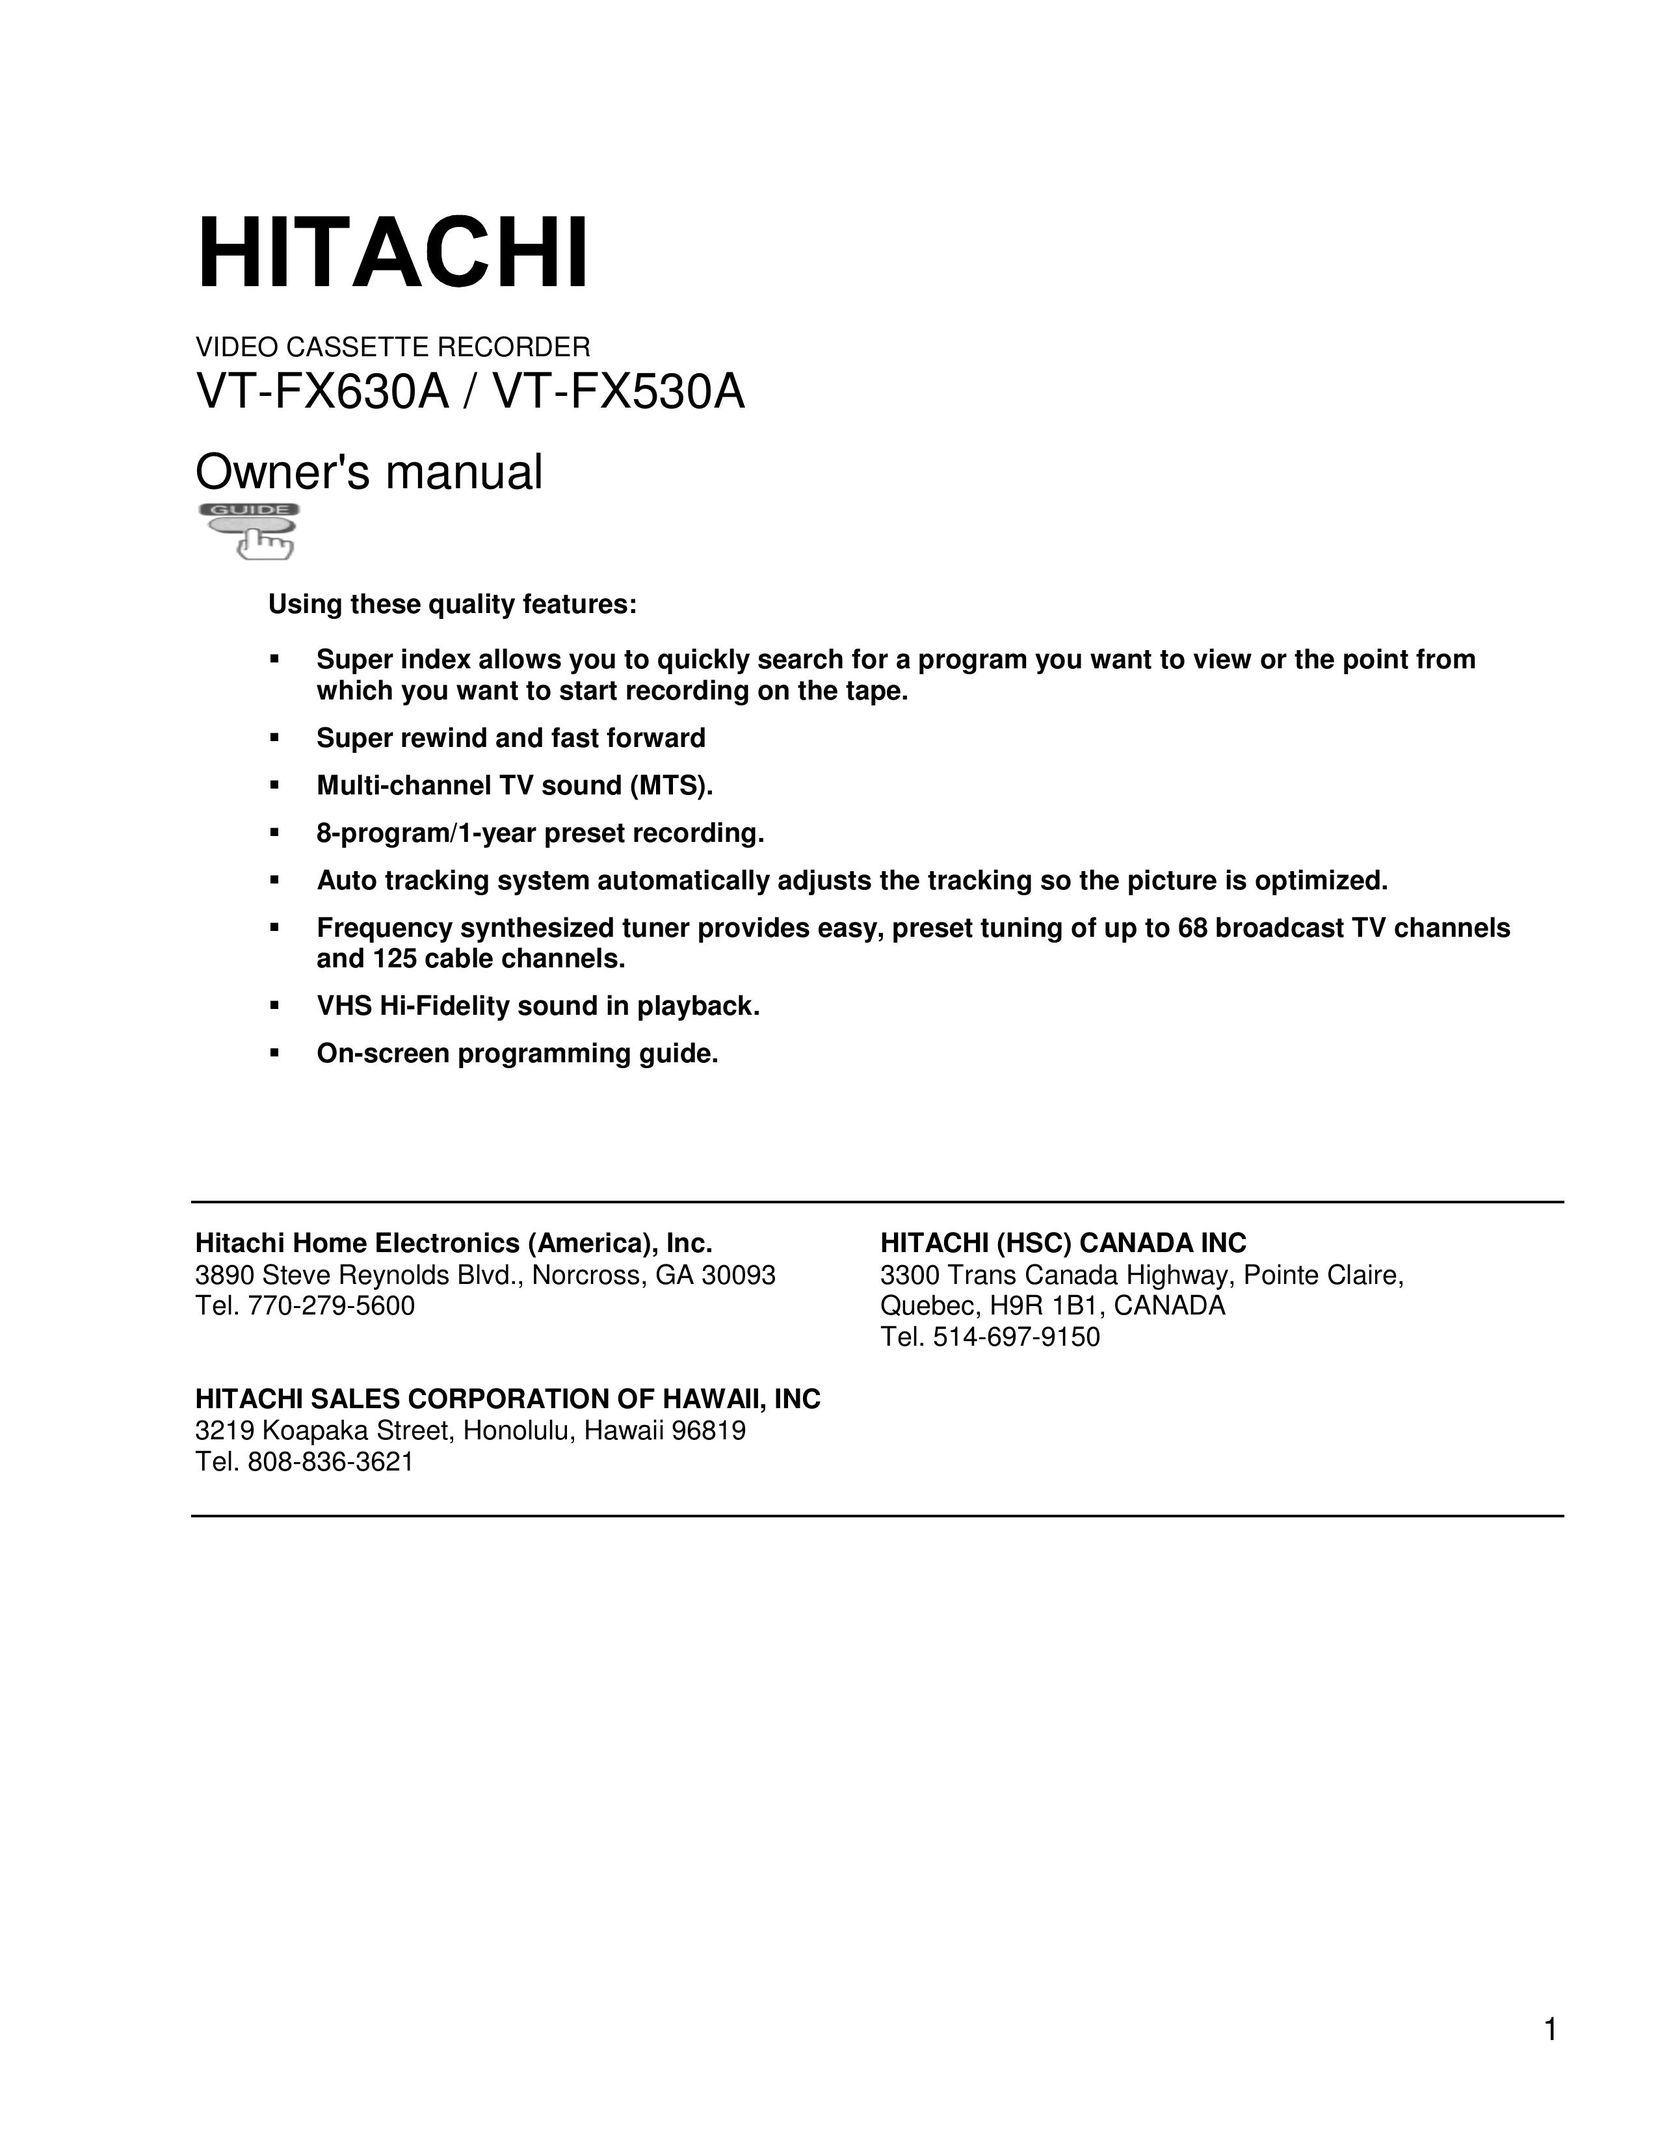 Hitachi VT-FX530A VCR User Manual